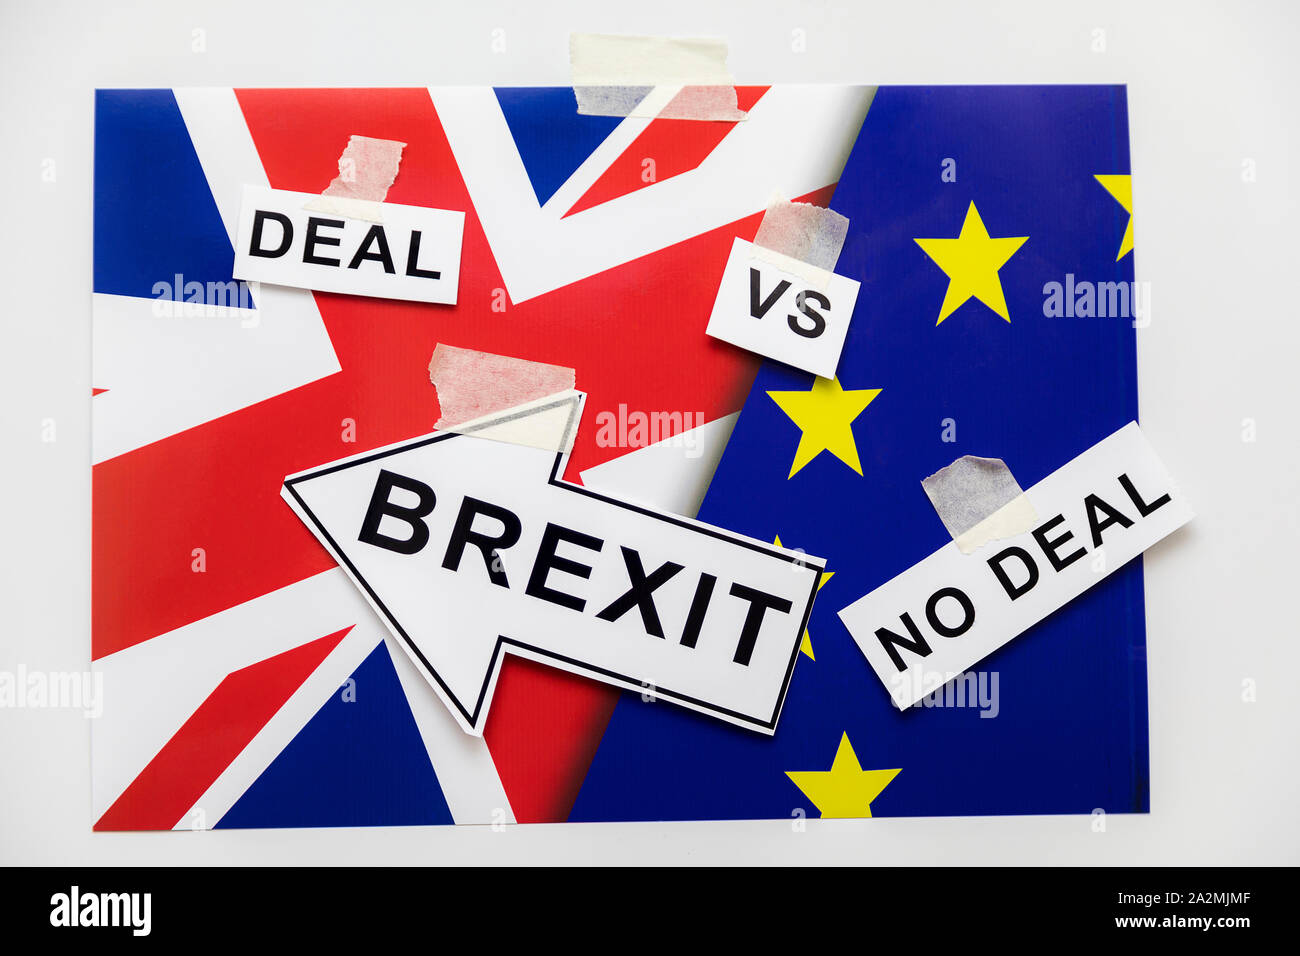 Brexit oder Nicht Brexit Deal or No Deal. Brexit Flaggen der Europäischen Union und Großbritannien mit Fragezeichen über Deal or No Deal, UK VS EU-Konzept I Stockfoto